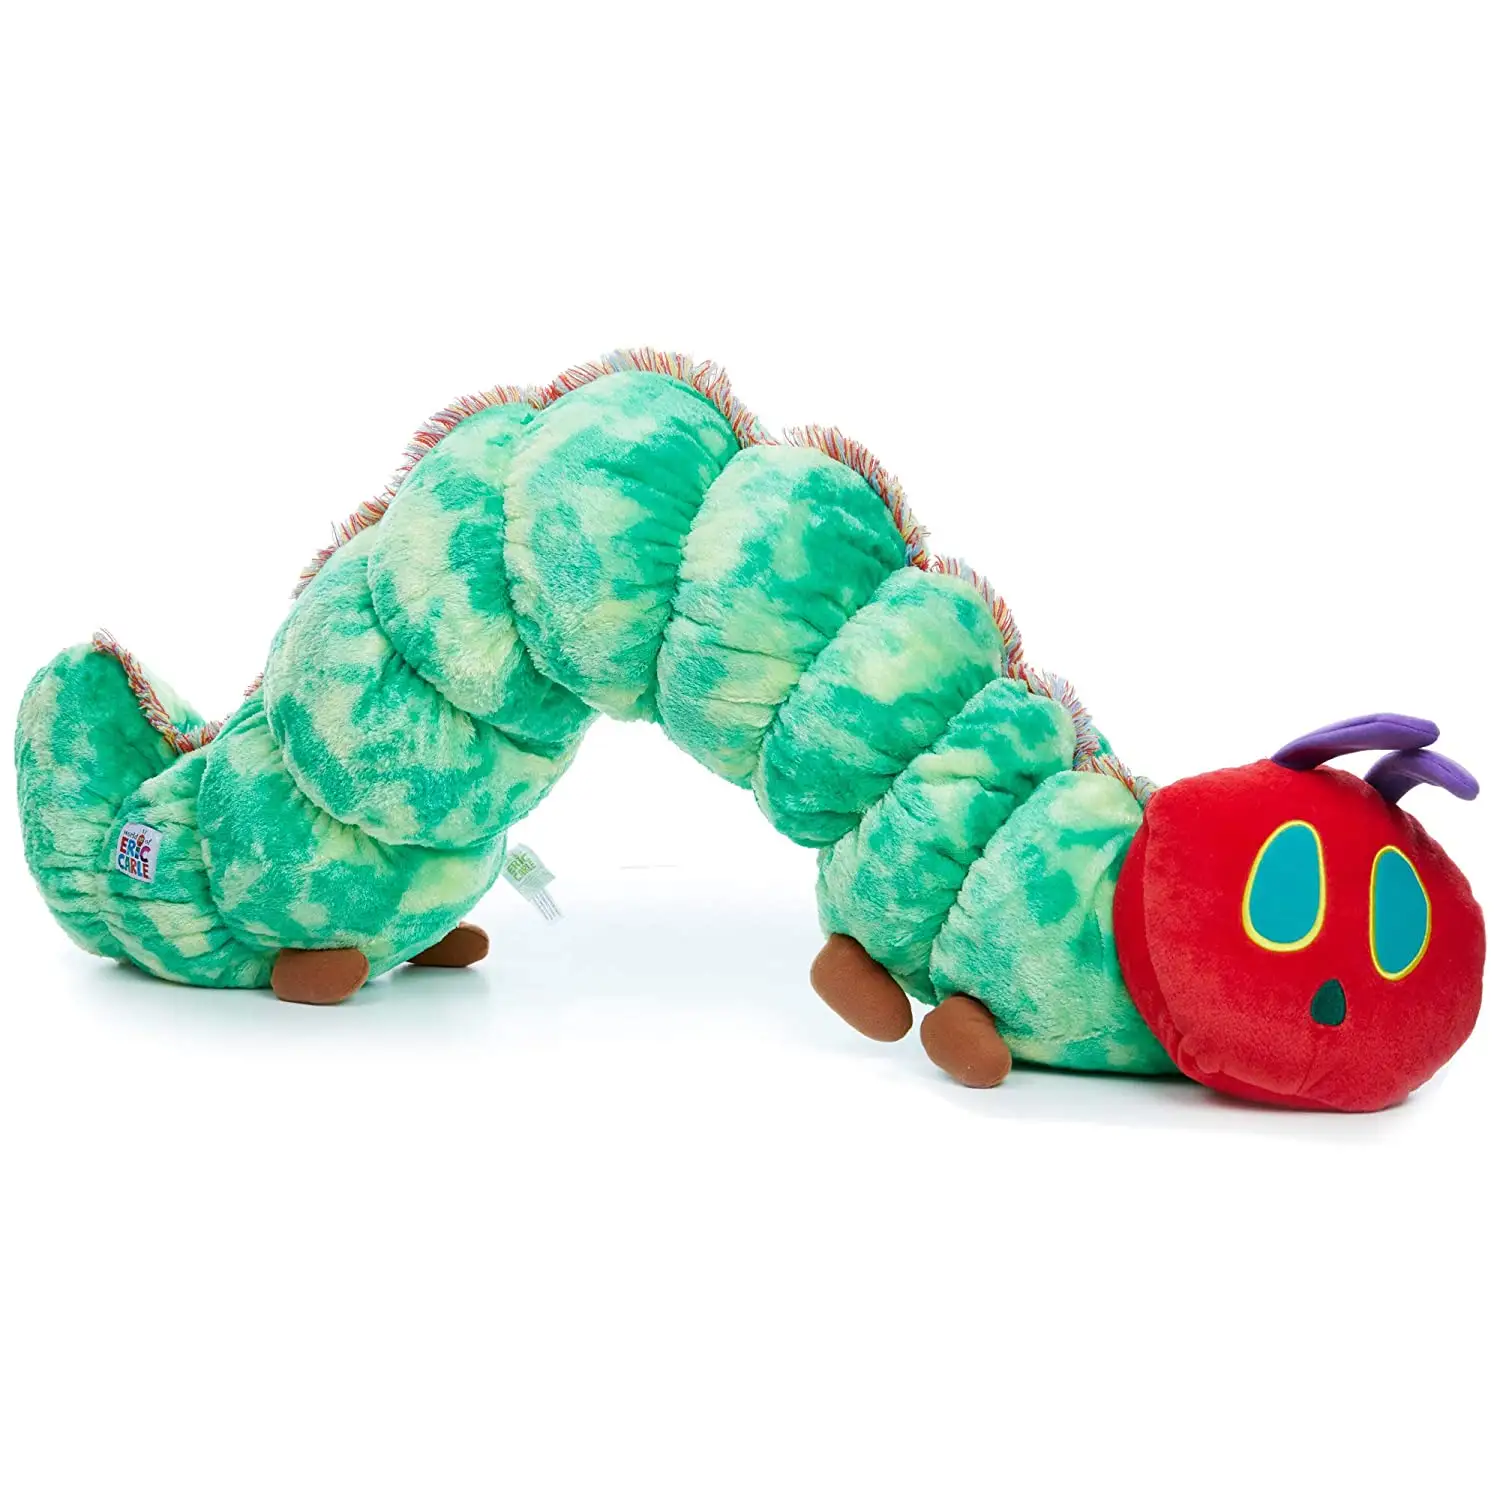 Мягкая игрушка гусеница. Гусеница Тедди. Мягкая гусеница Ашан игрушка. Caterpillar Jumbo.